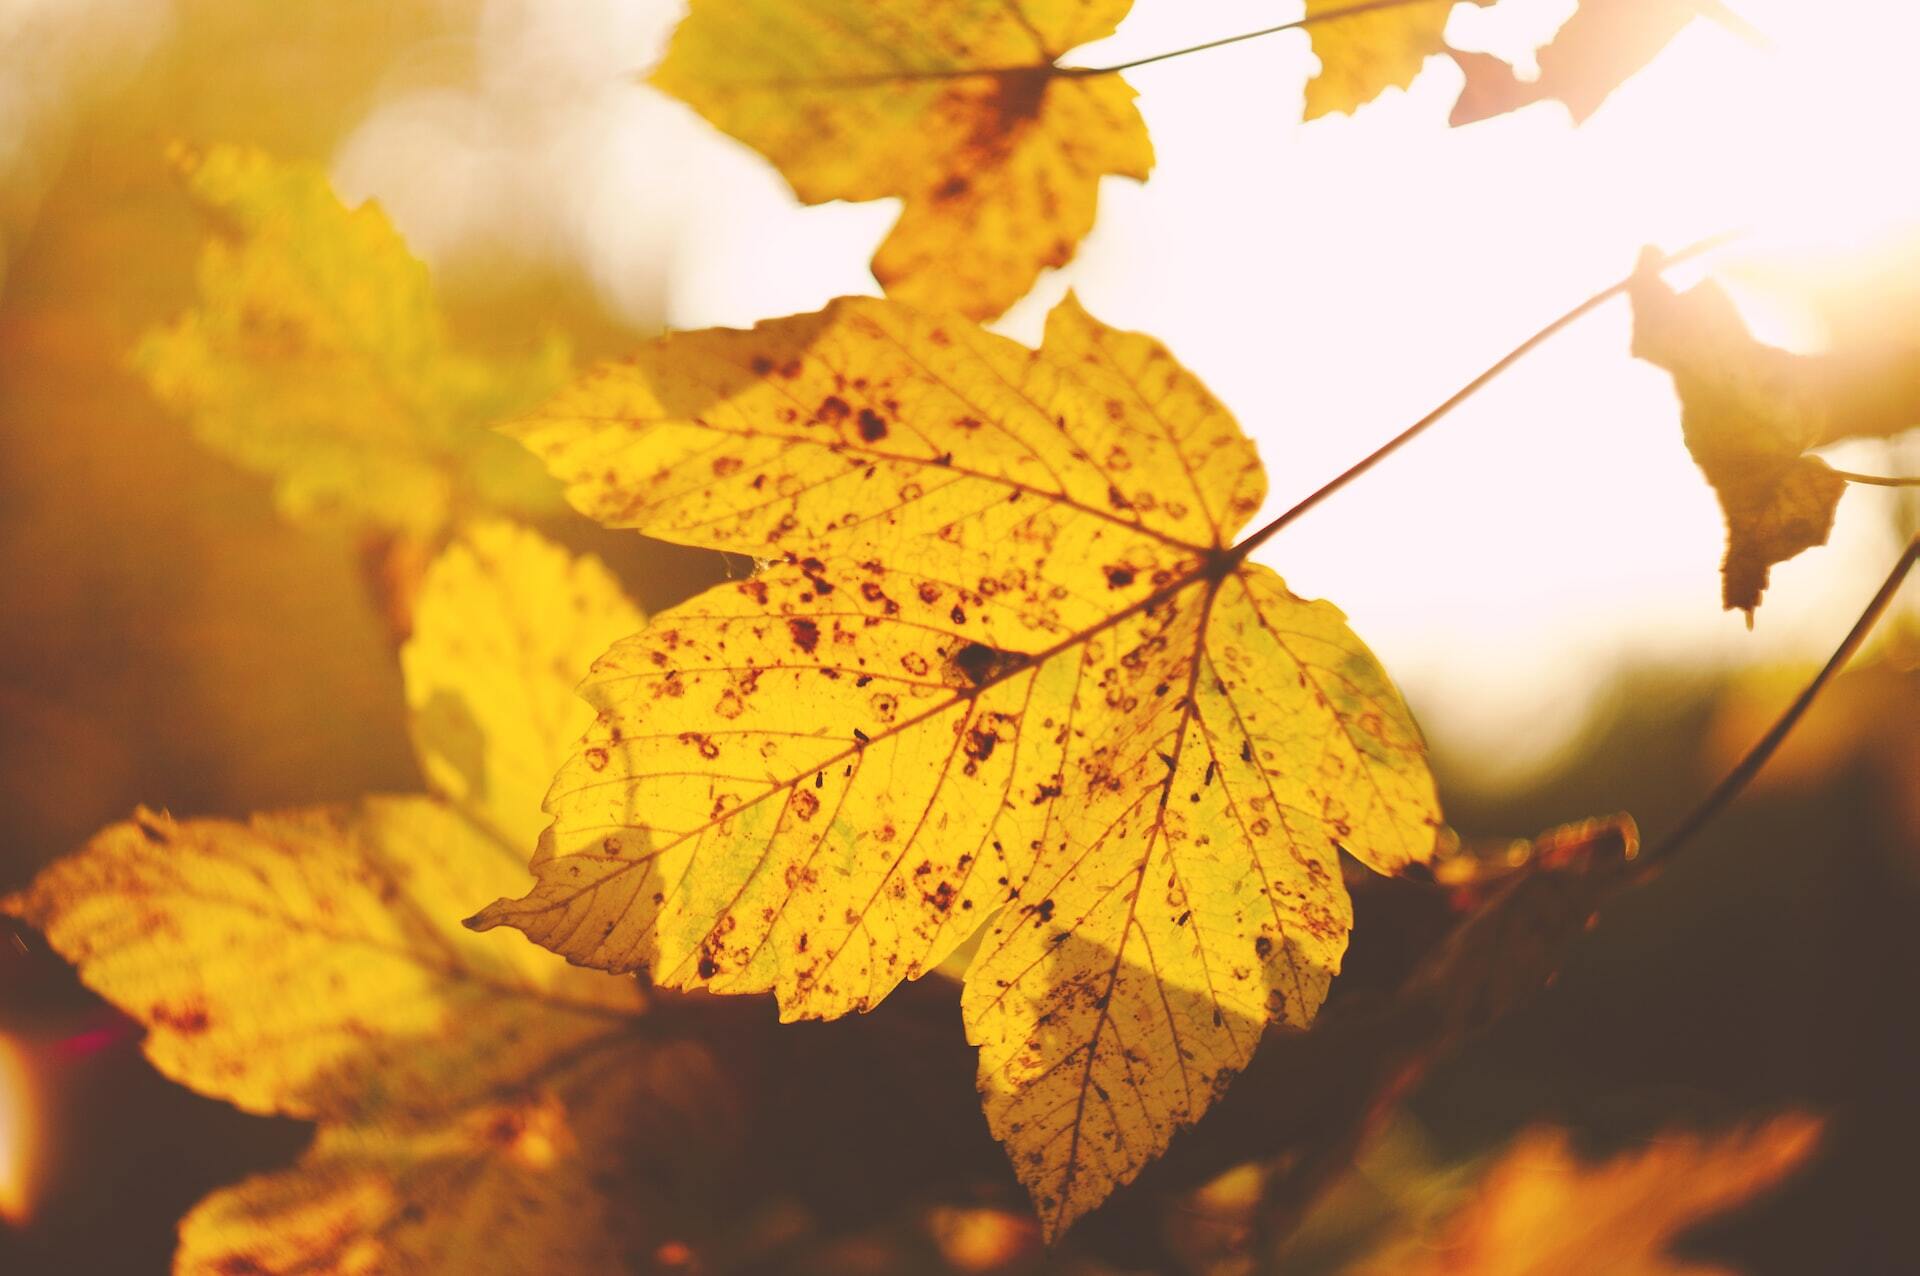 Любите фоткаться в осенних листьях Такие фотосессии могут быть опасны для здоровья